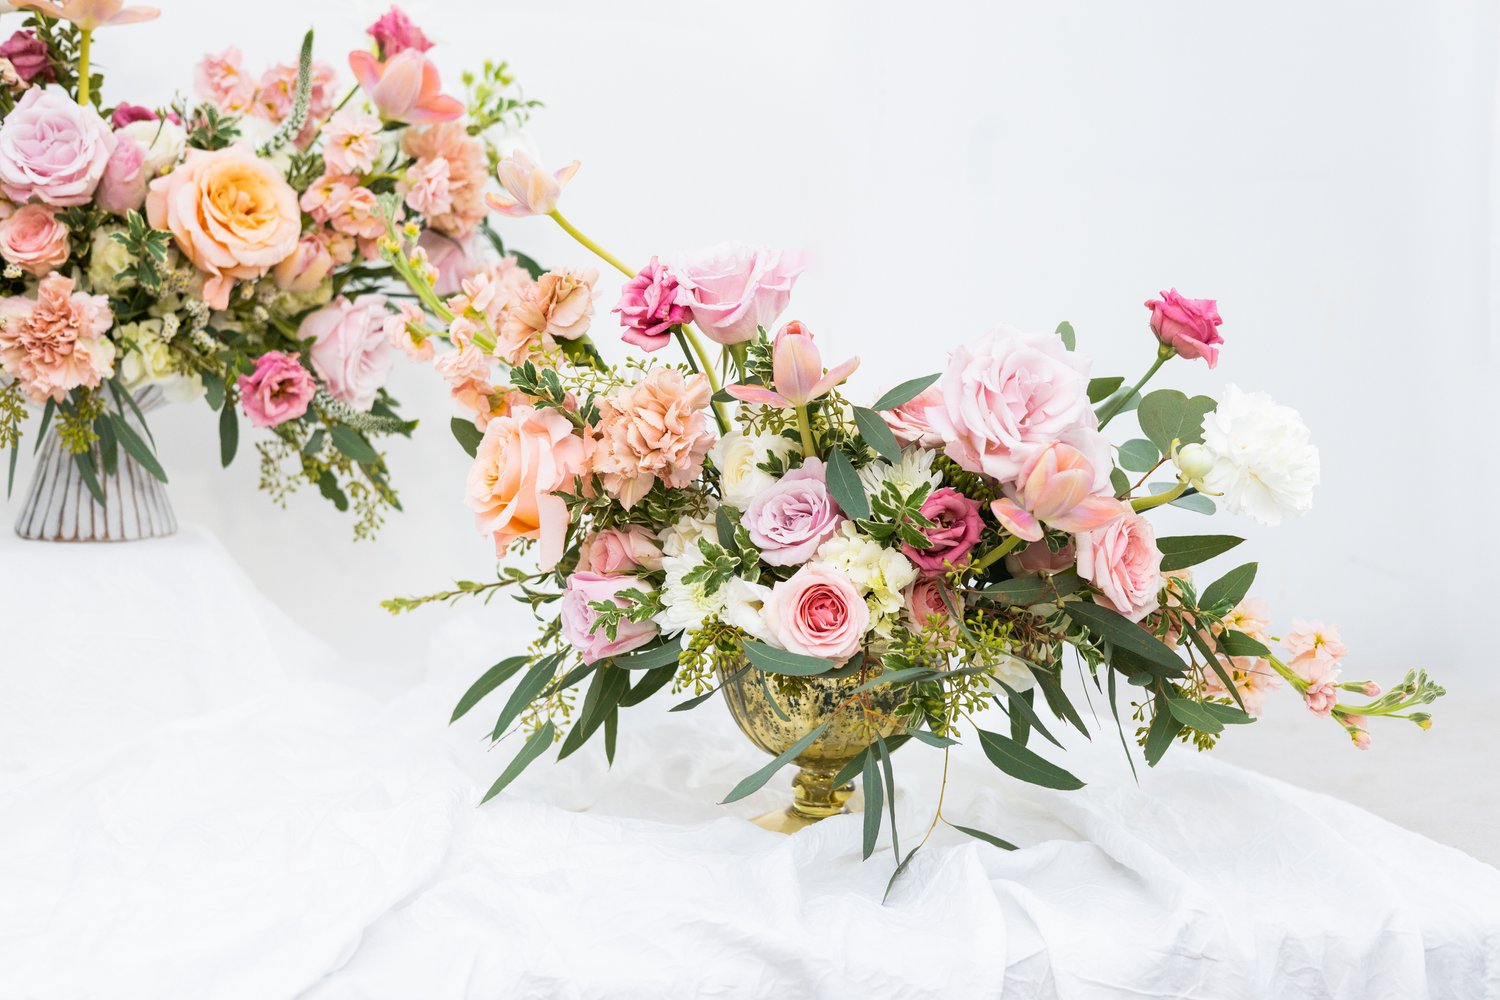 Pretty in Pink Floral arrangement centerpieces – Shop Juelzjems